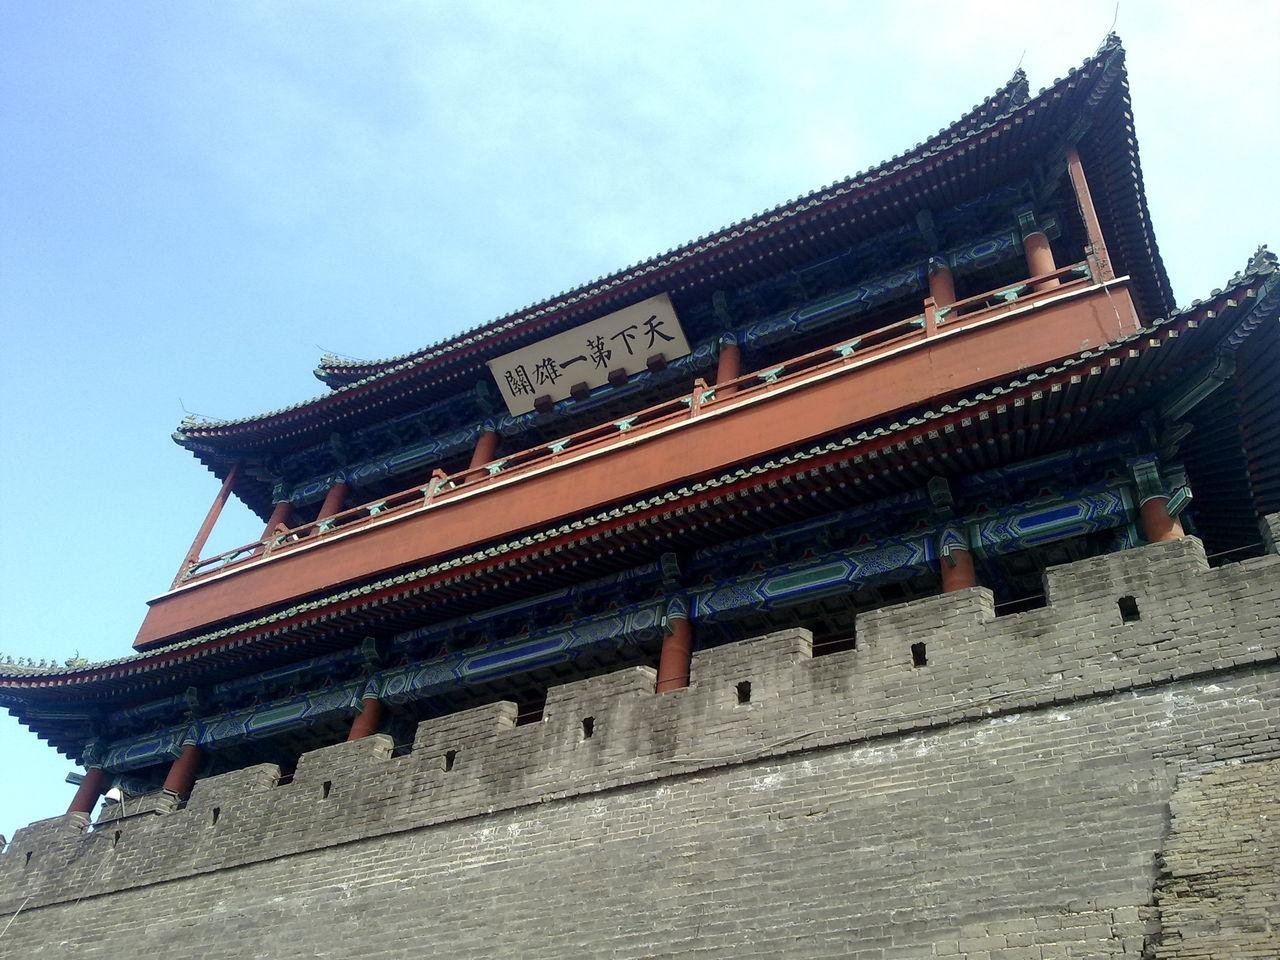 The Juyongguan Great Wall